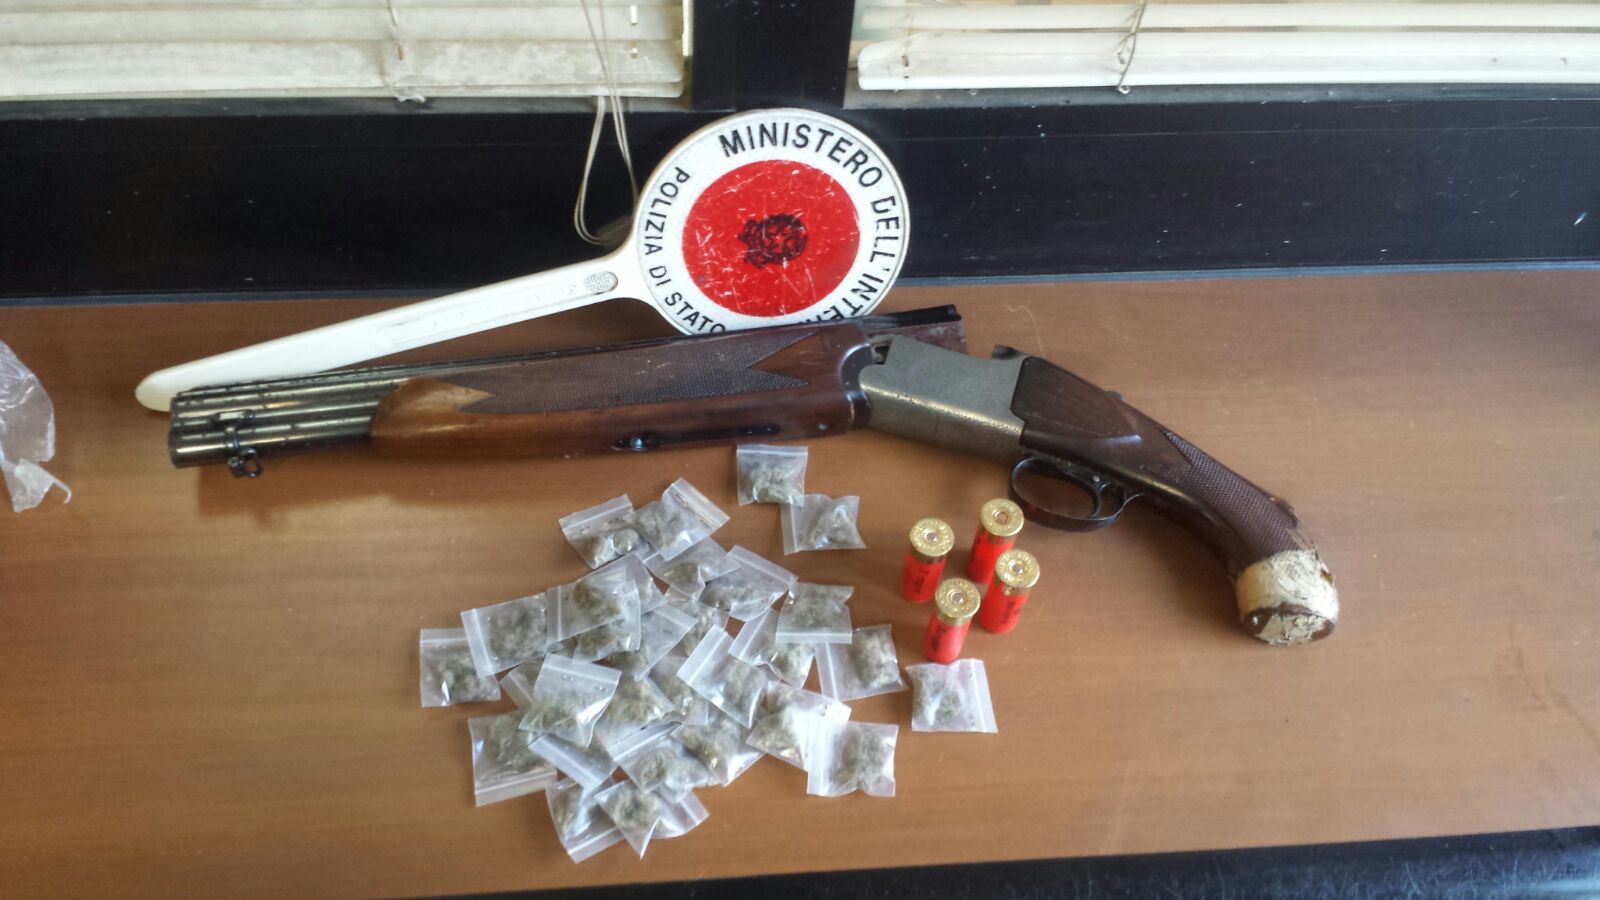  La Polizia di Stato sequestra nel quartiere Sanità un fucile a canne mozze e dosi di droga